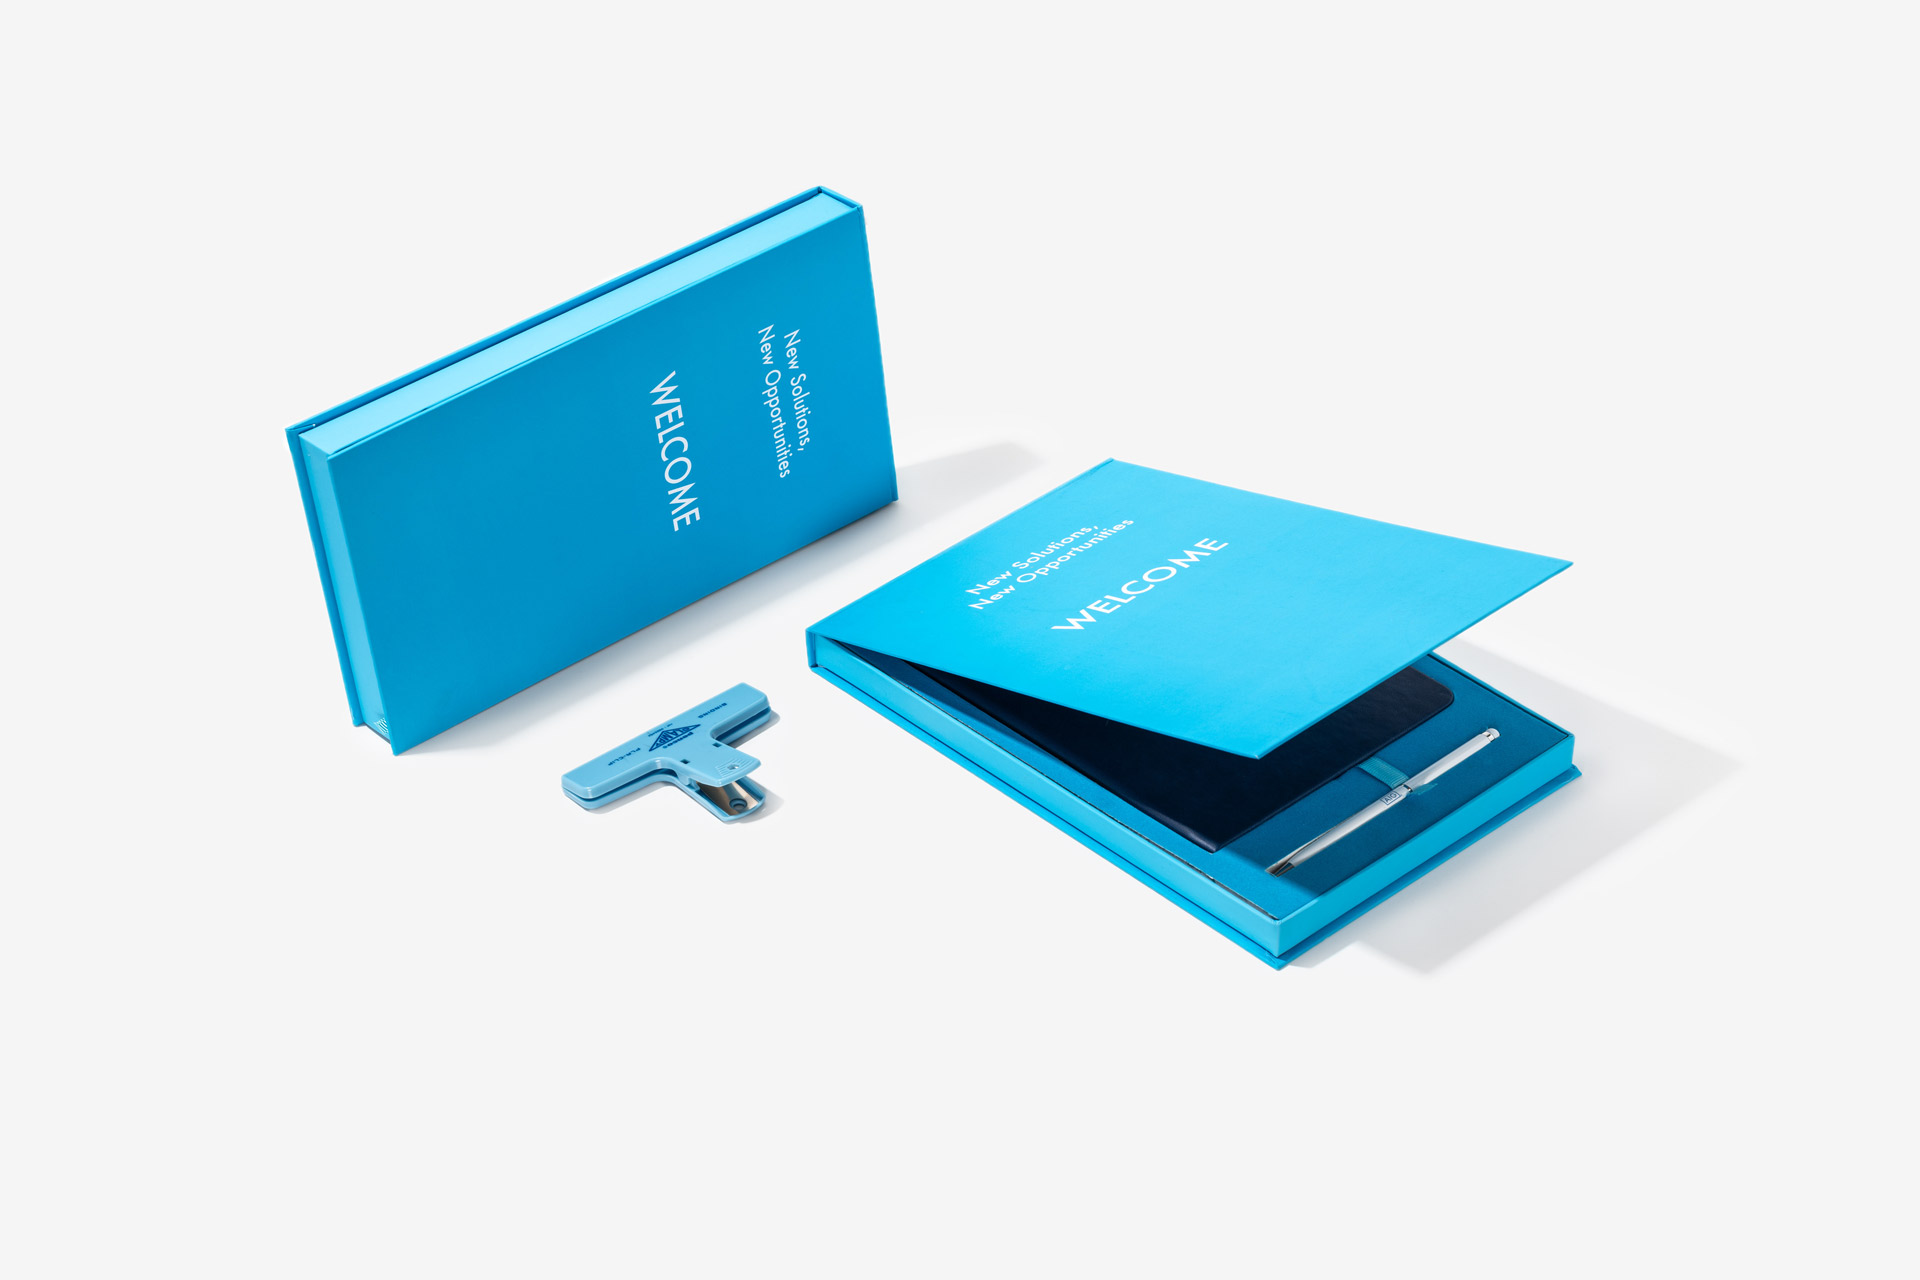 AIG Notebook & Pen in Premium Box